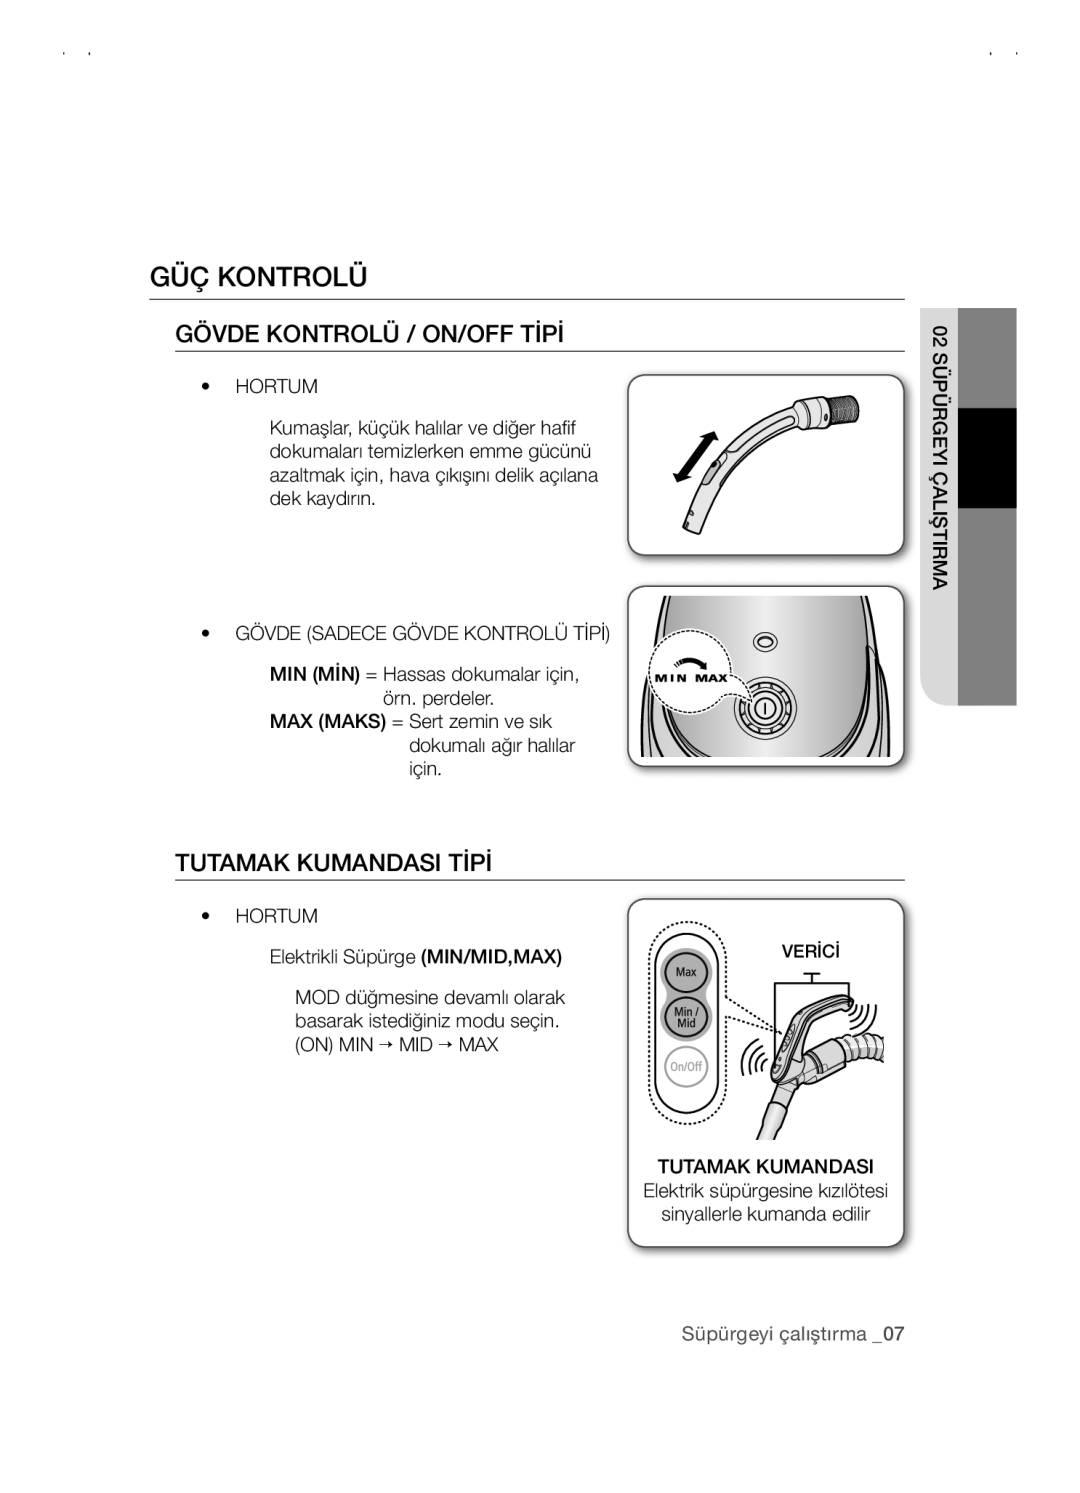 Samsung VCC5480V3B/XTR manual Güç Kontrolü, Gövde Kontrolü / On/Off Tipi, Tutamak Kumandasi Tipi, Süpürgeyi çalıştırma 